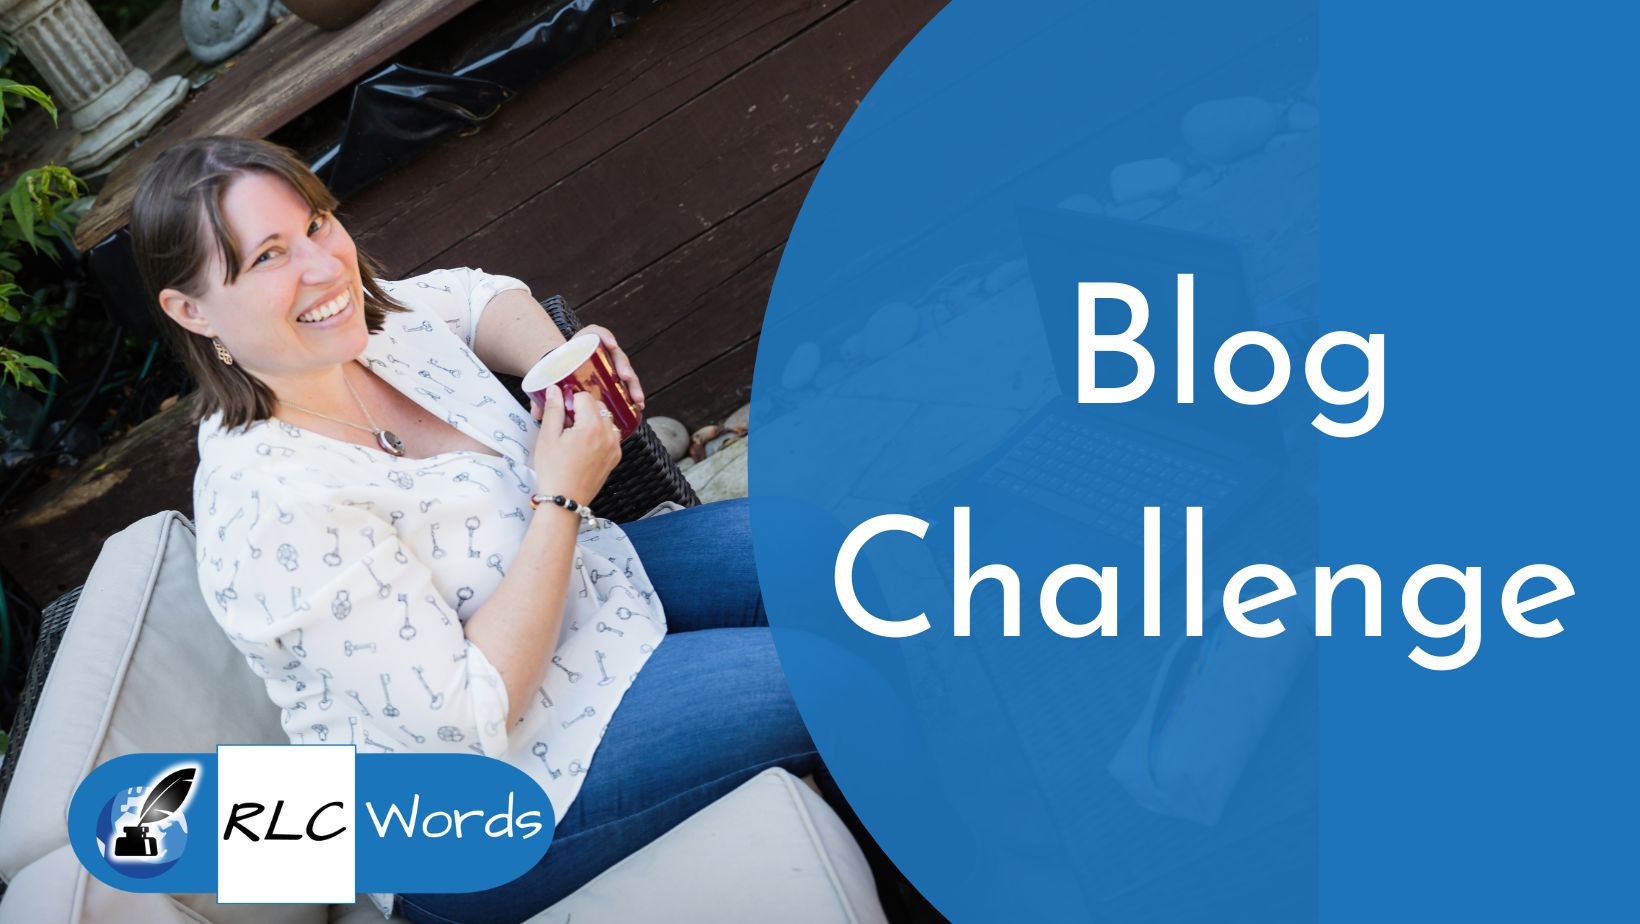 Blog Challenge downloads